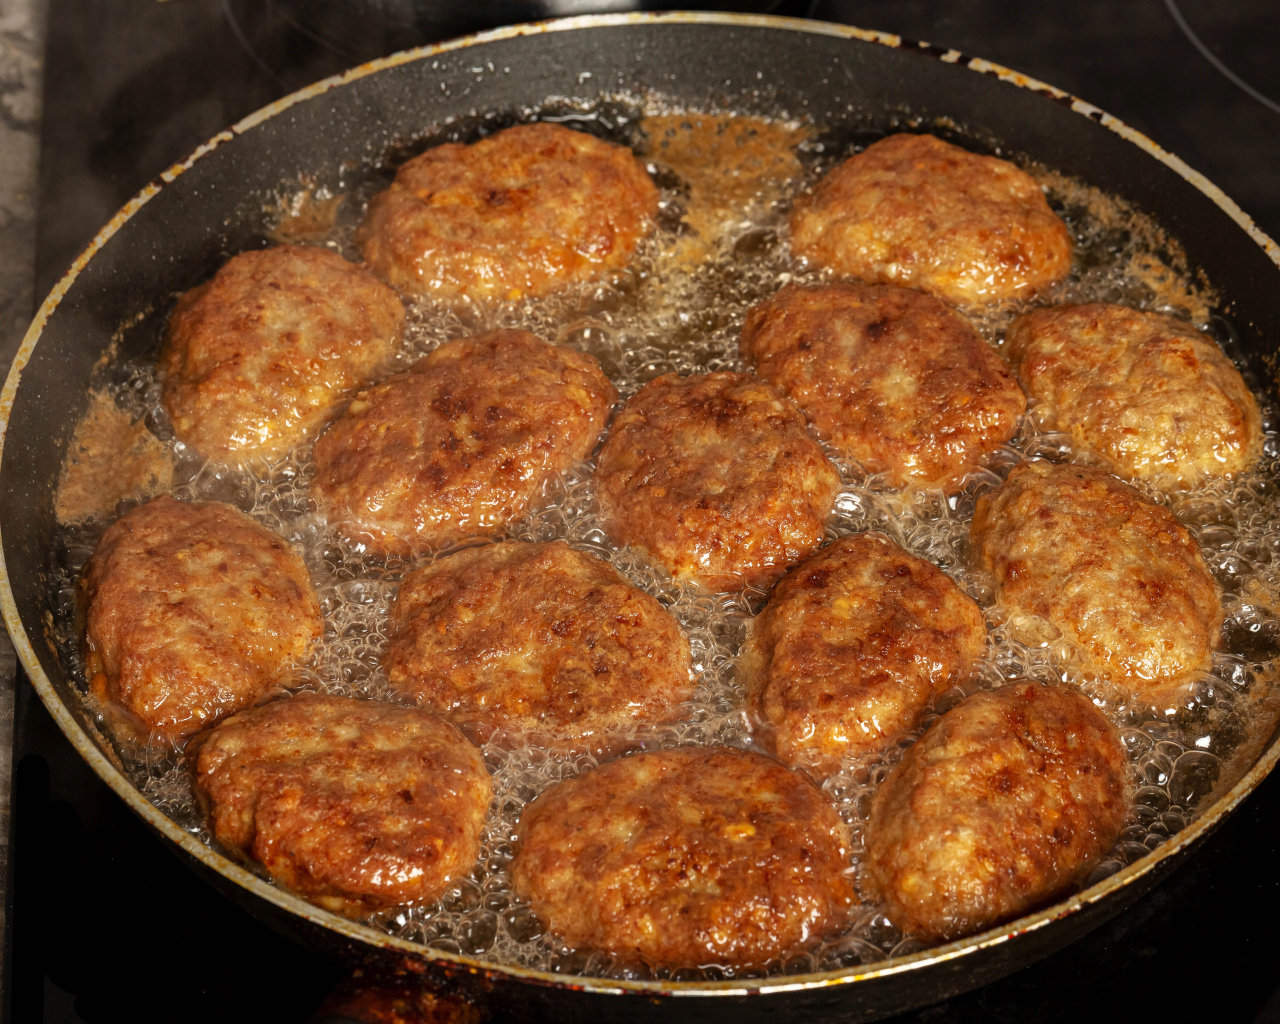 Ruddy cutlets in oil in a pan